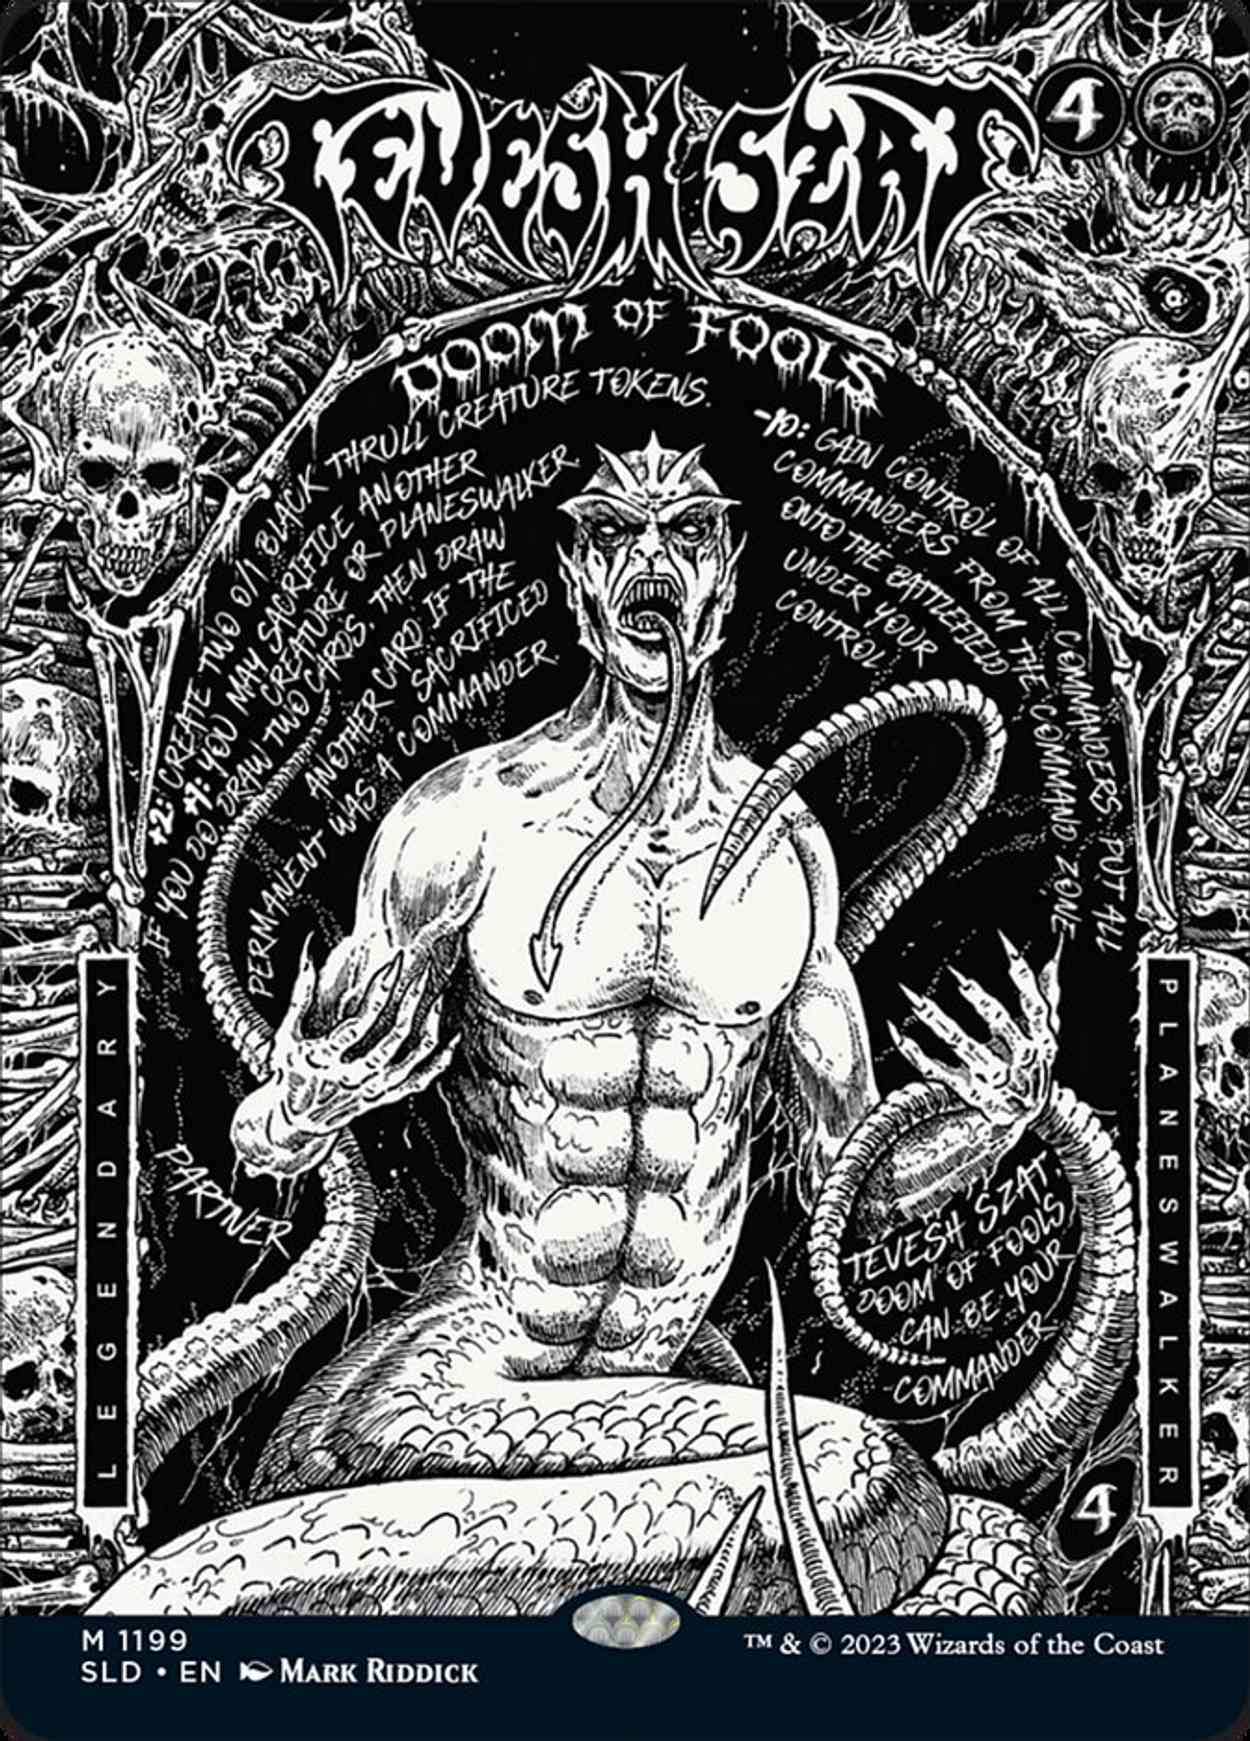 Tevesh Szat, Doom of Fools magic card front